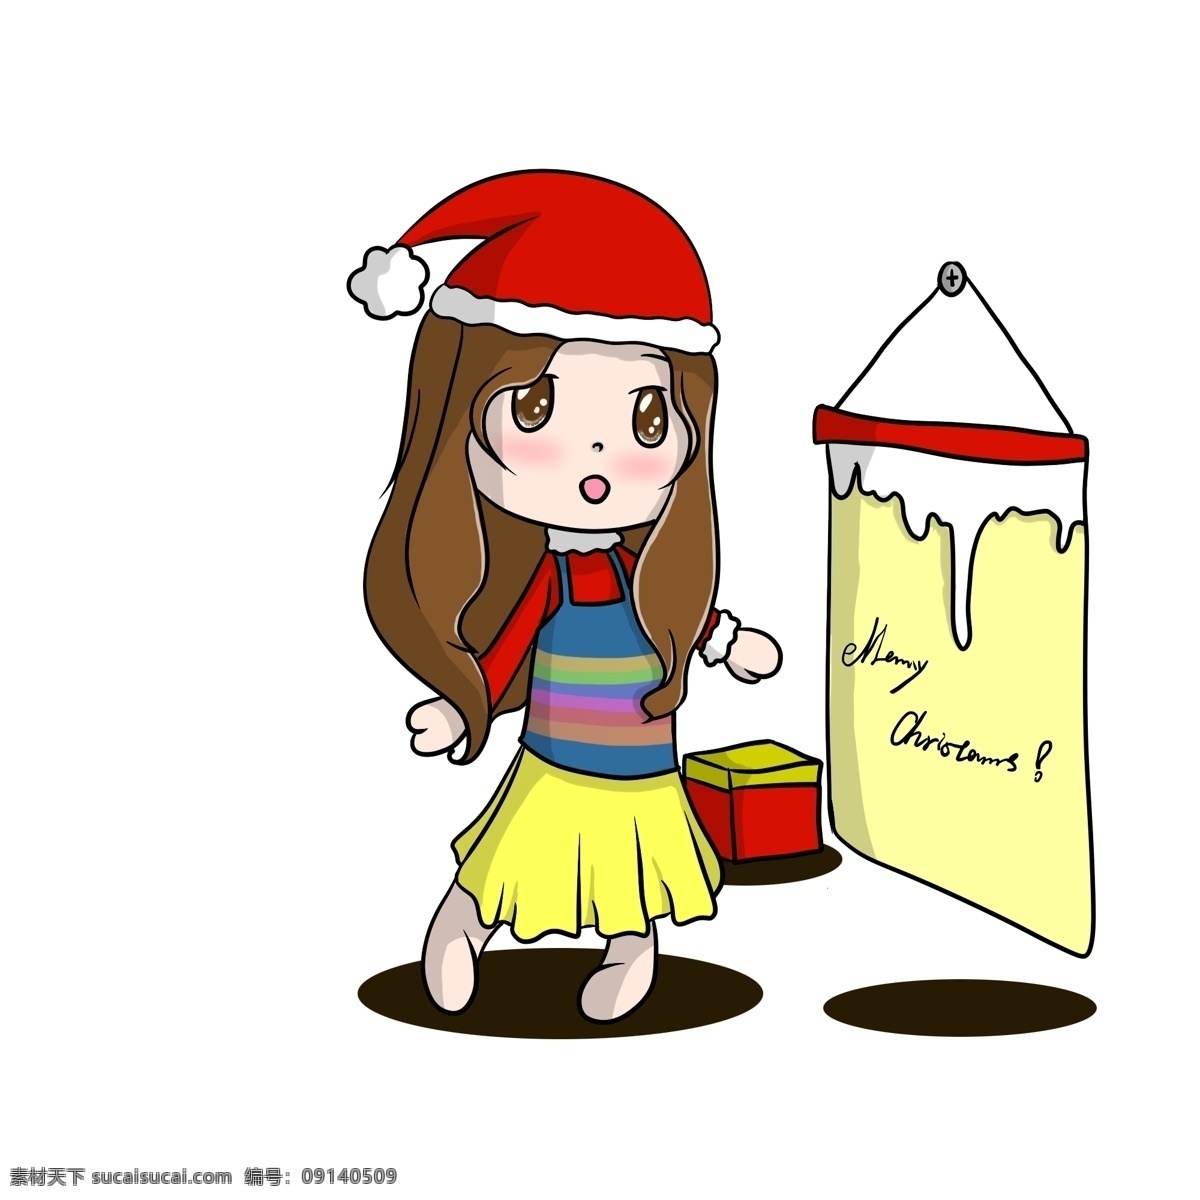 圣诞节 原创 q 版 手绘 可爱 女孩 人物 卡通 插画 圣诞 q版 萌 妹妹 活泼 圣诞帽子